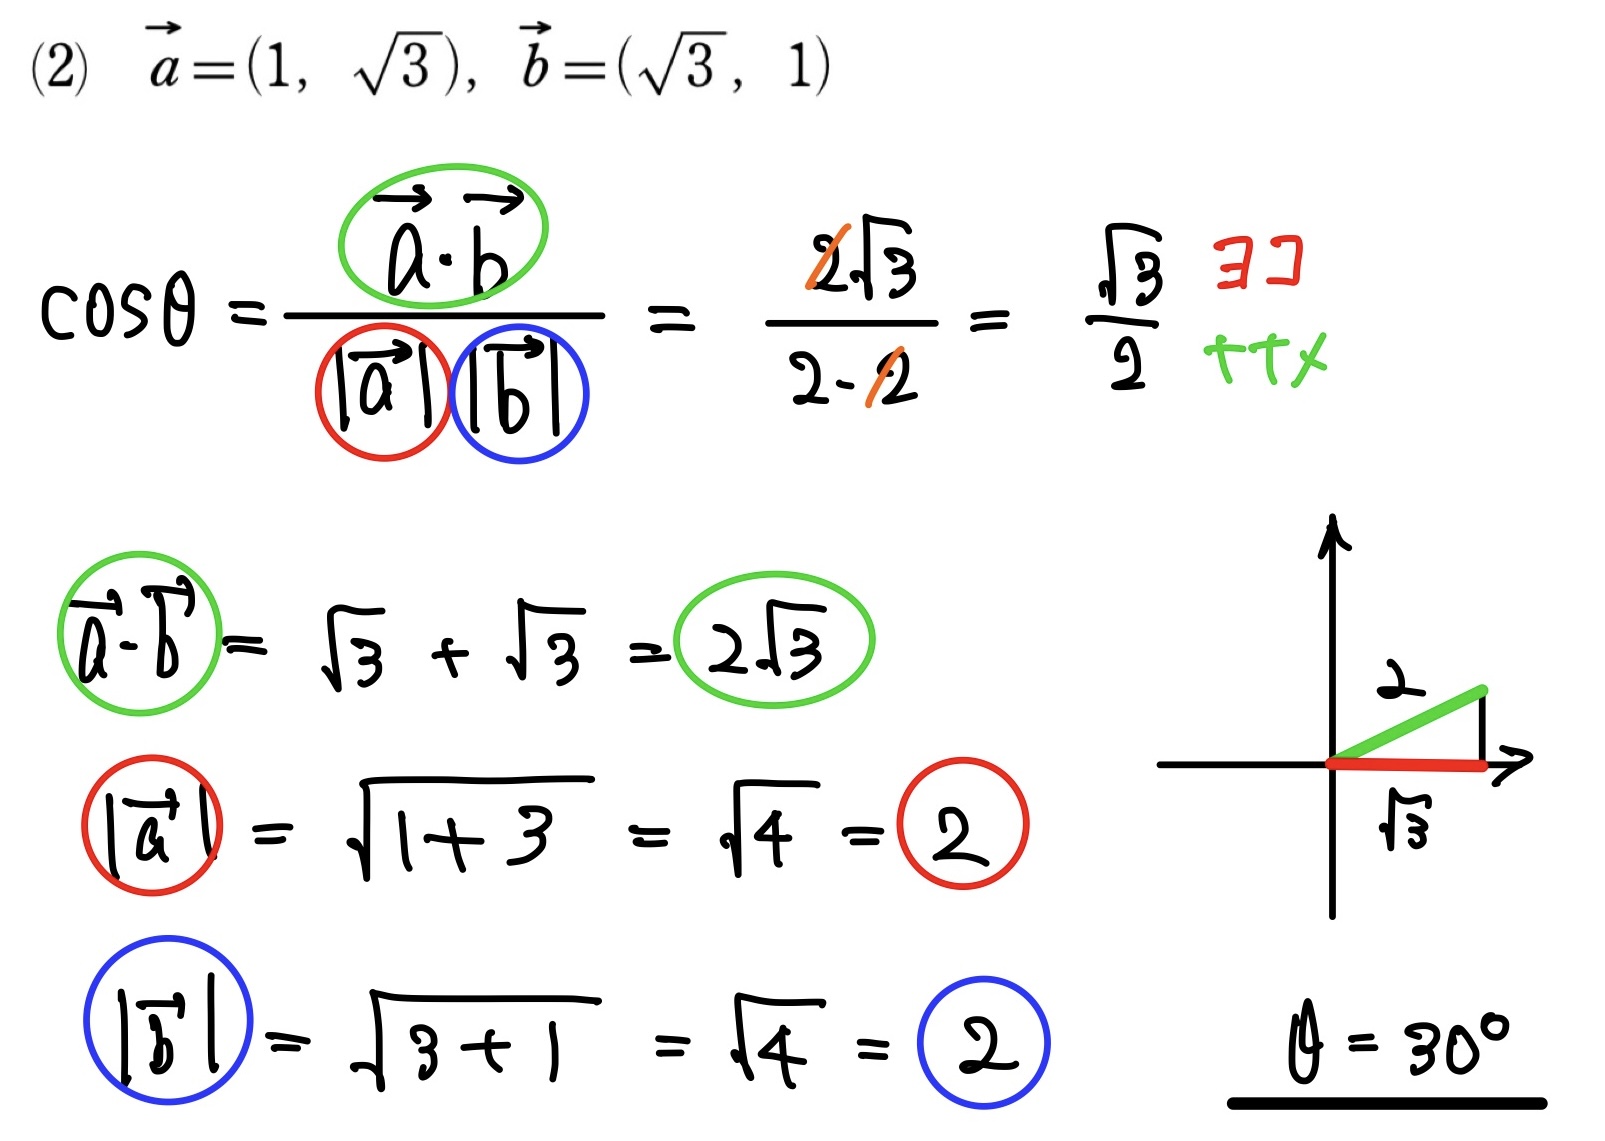 ベクトルのなす角　(2)の解答